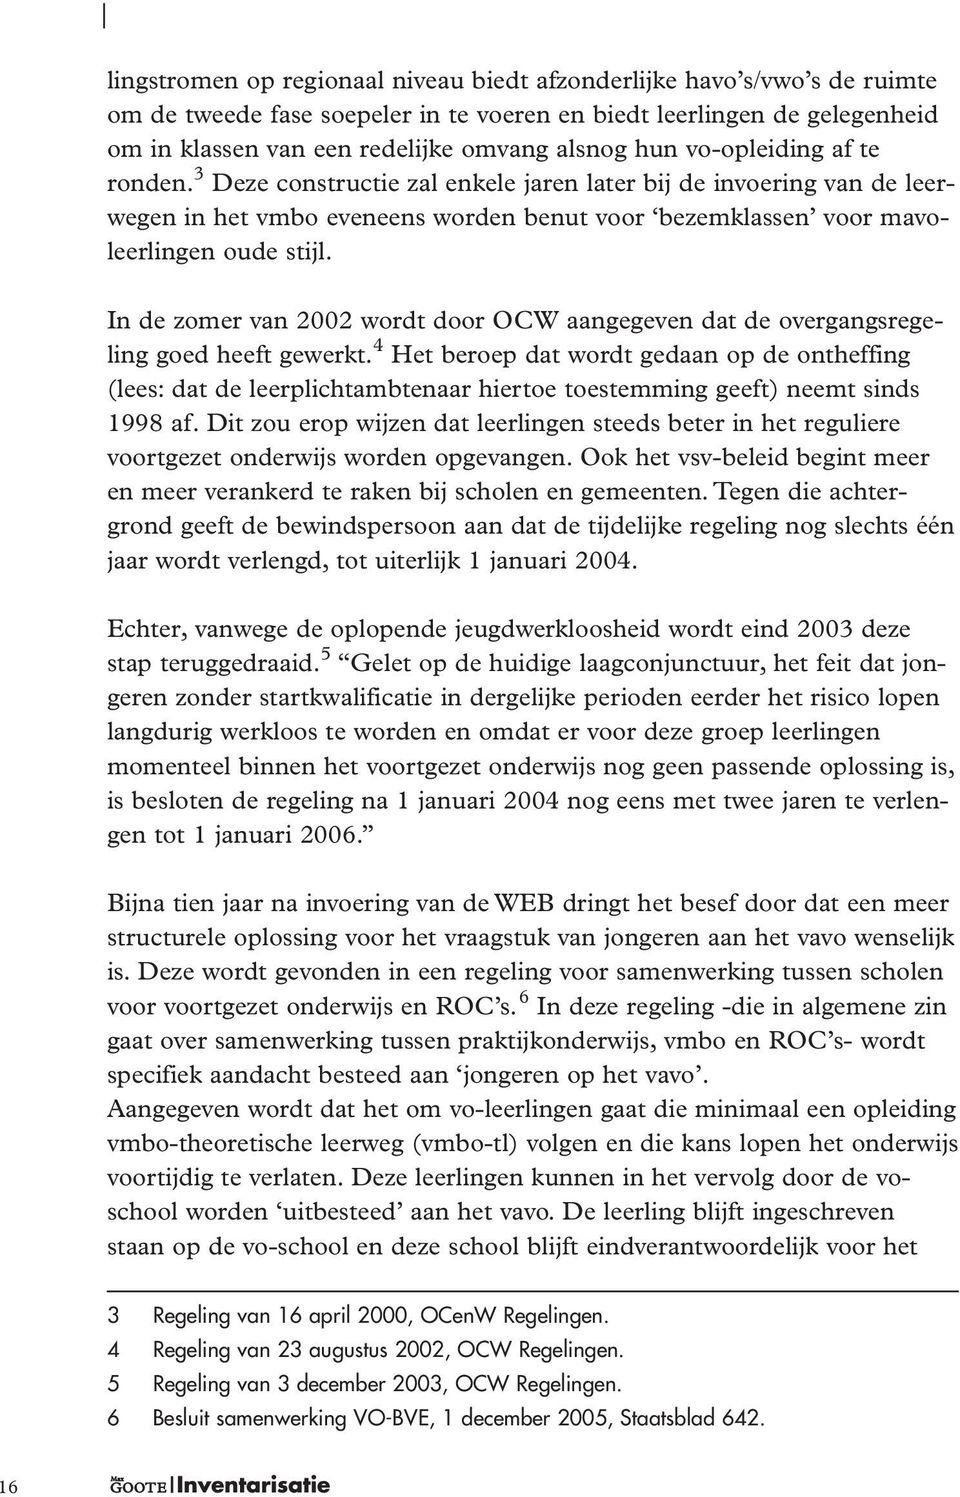 In de zomer van 2002 wordt door OCW aangegeven dat de overgangsregeling goed heeft gewerkt.